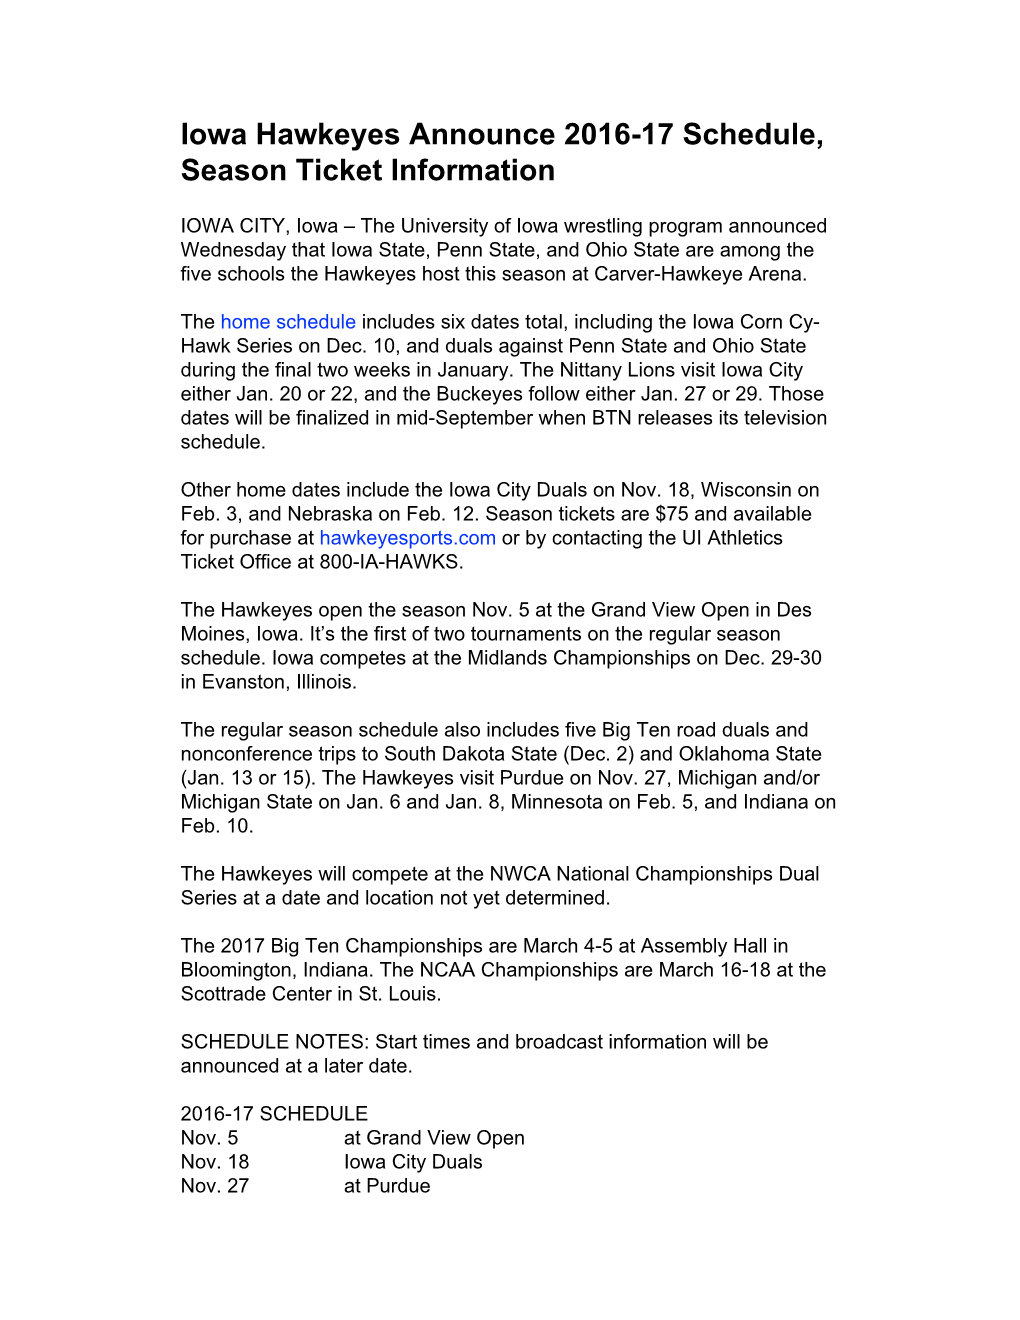 Iowa Hawkeyes Announce 2016-17 Schedule, Season Ticket Information